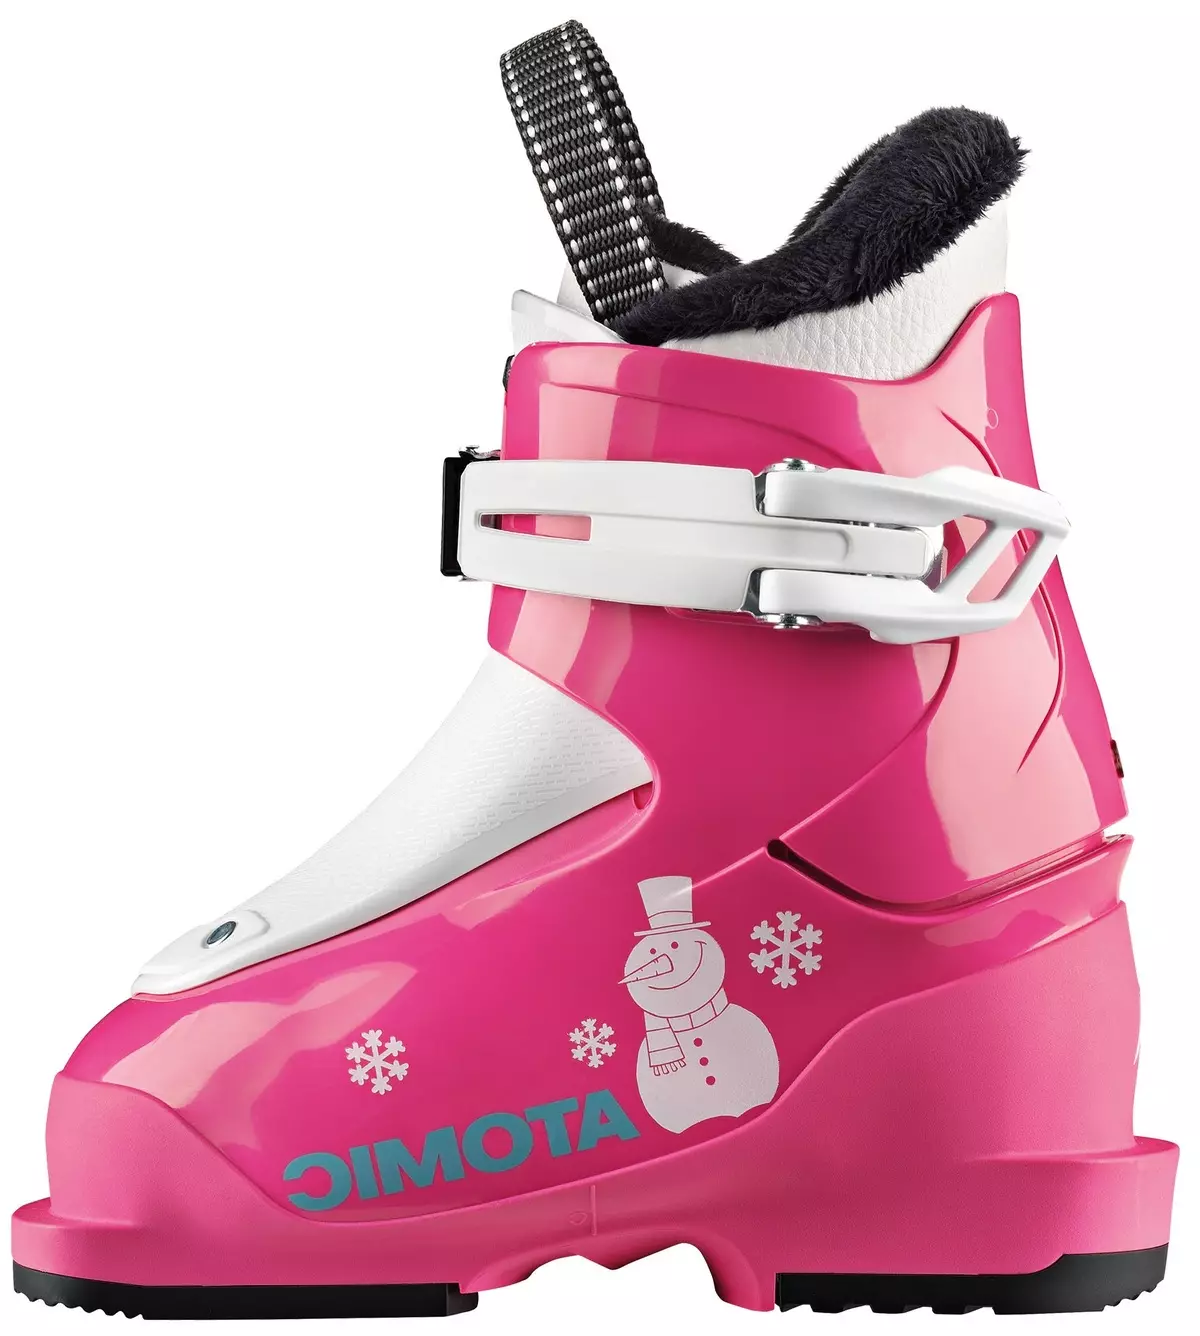 Kinderskischschuhe: Ski und andere Schuhe und Tabelle ihrer Größe. Wie entscheiden Sie sich für Skischuhe für Kinder? Modelle 28-33 und andere Größen 1664_44